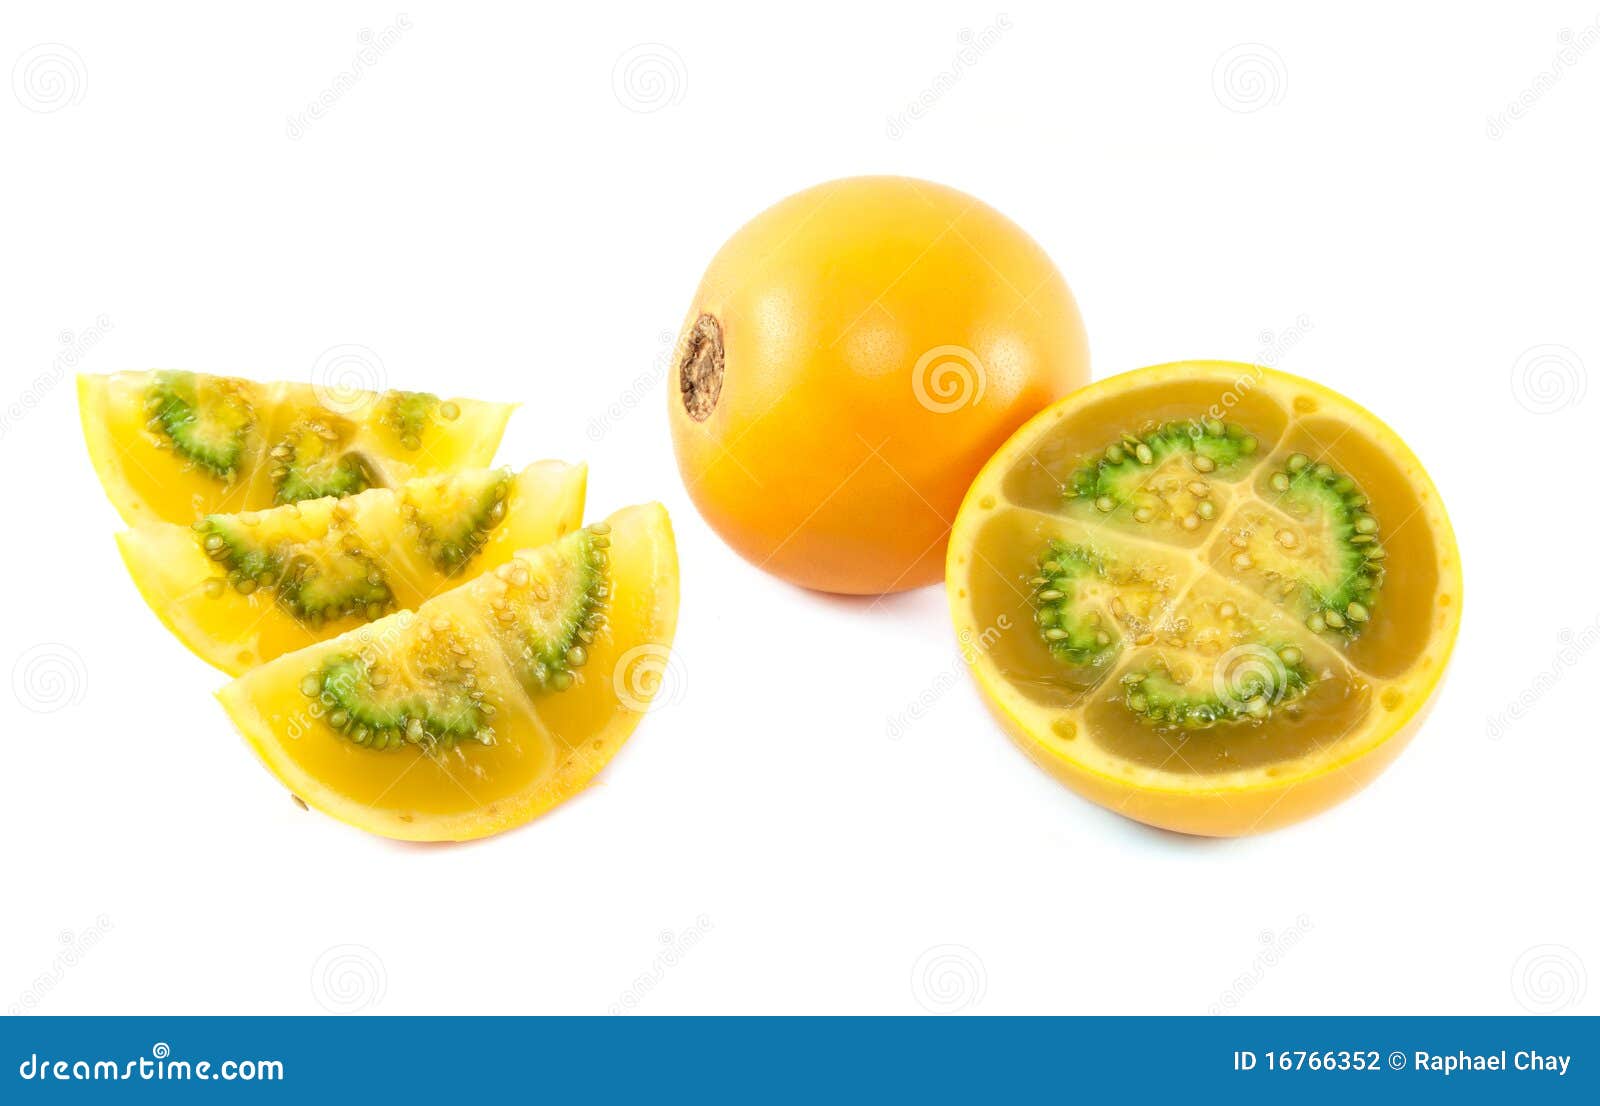 Imagenes por orden alfabetico Fruta-de-lulo-de-colombia-16766352